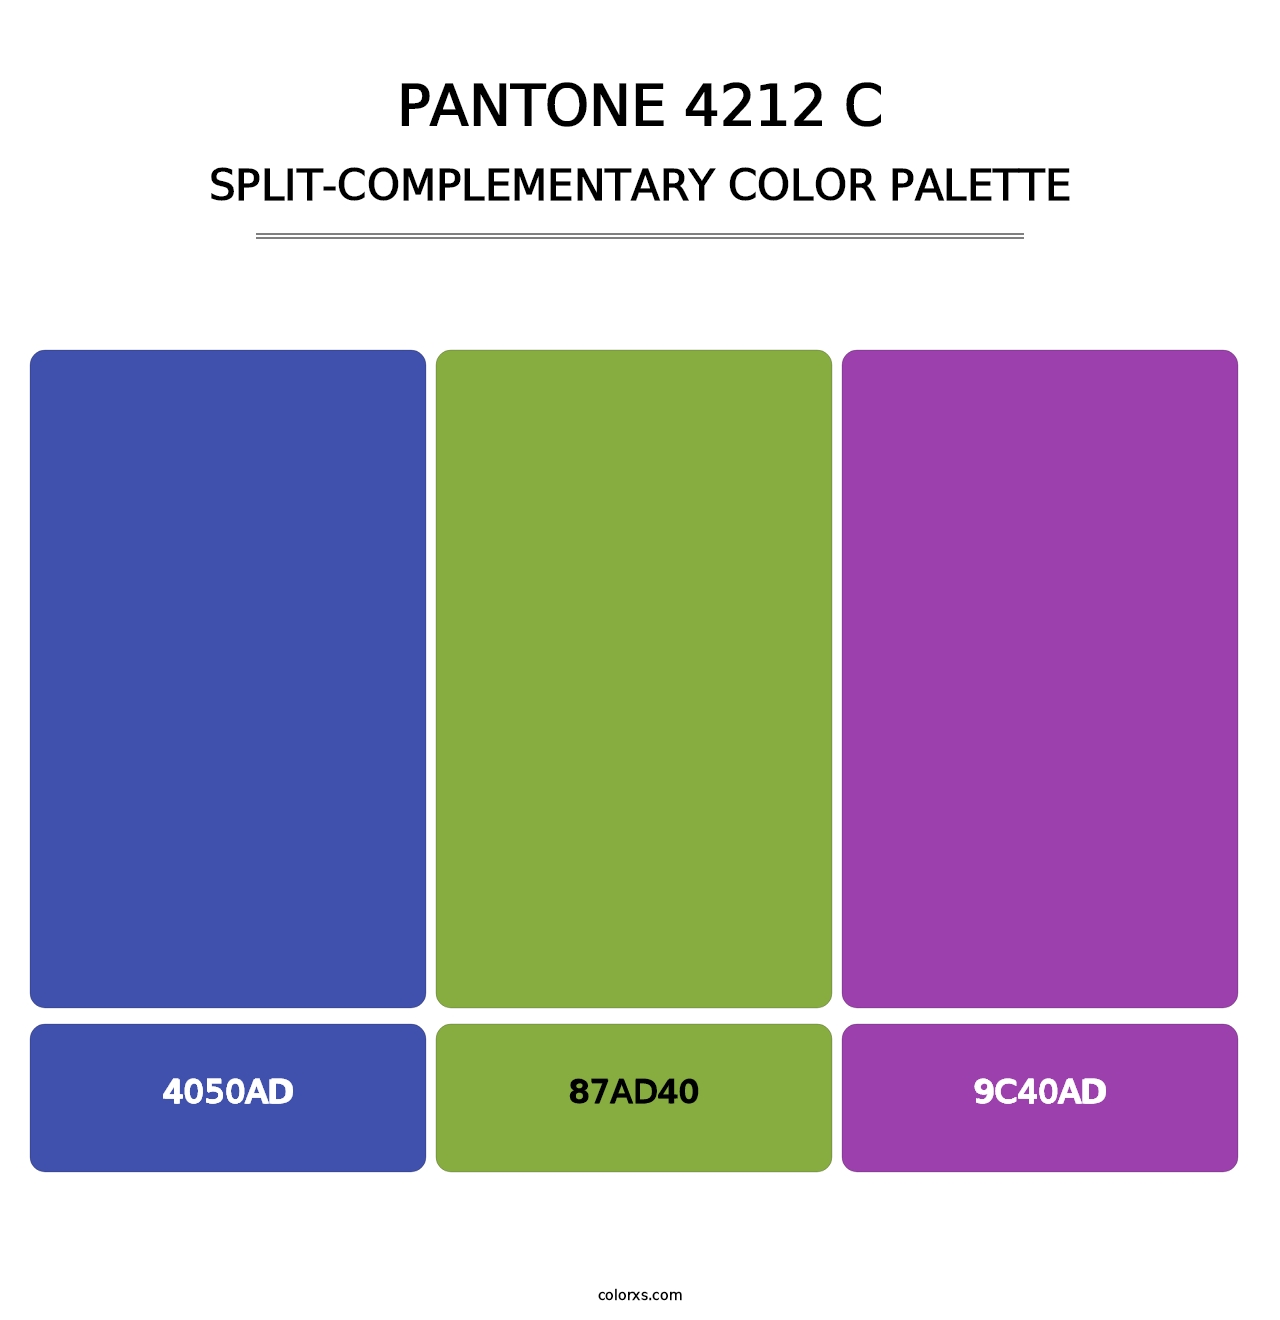 PANTONE 4212 C - Split-Complementary Color Palette